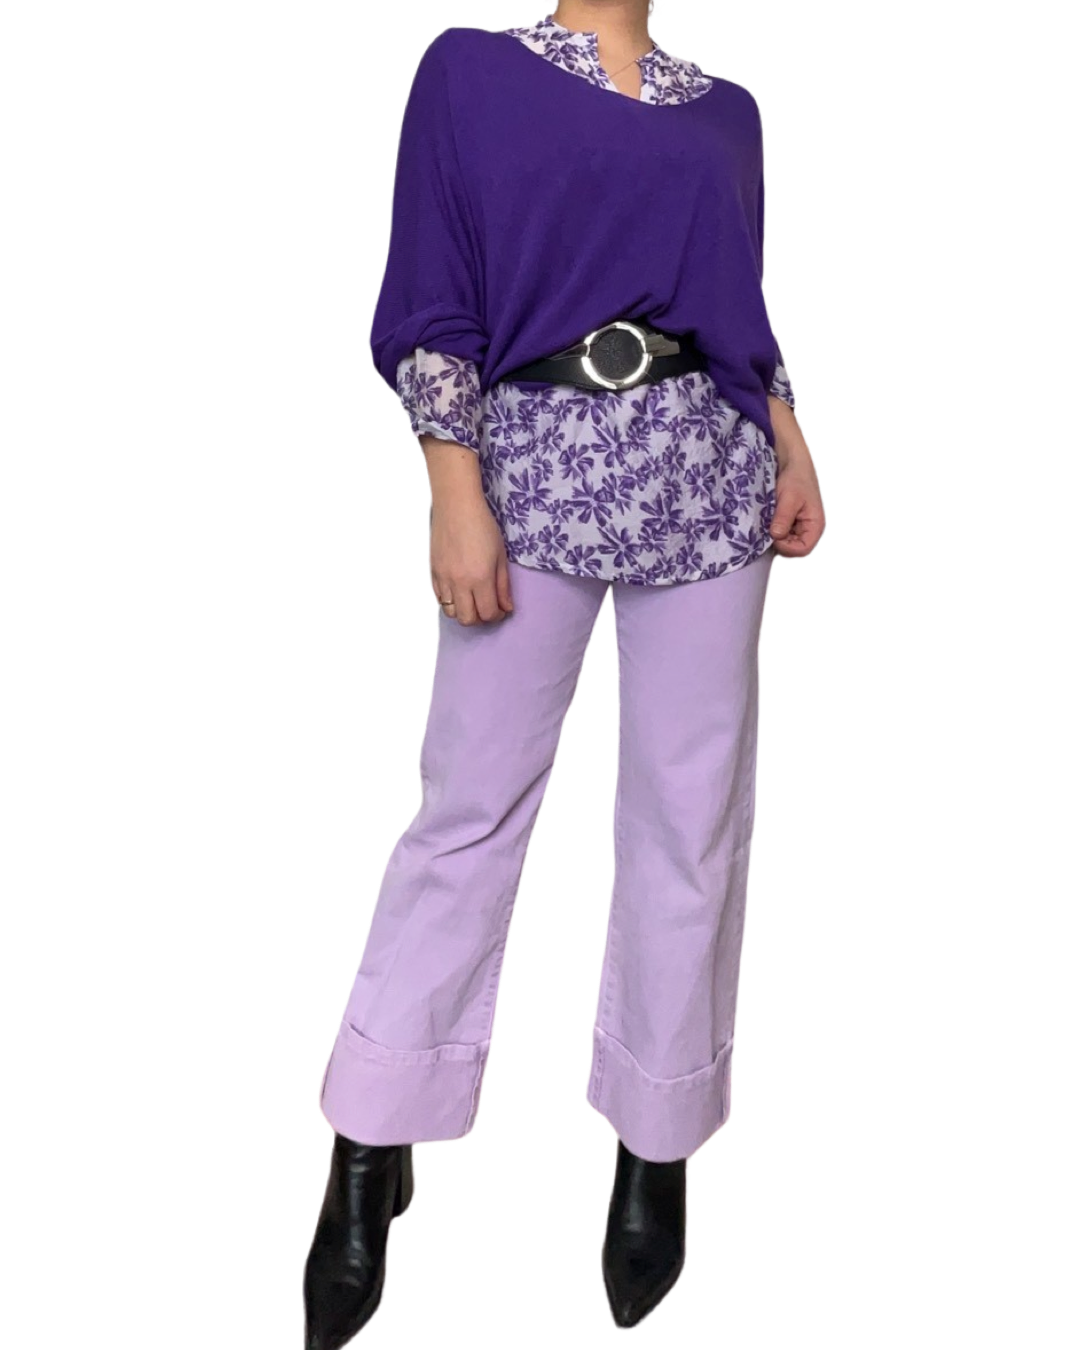 Blouse blanche pour femme imprimé de motifs floraux mauves avec chandail mauve, ceinture noire, pantalons lilas et bottes noires.